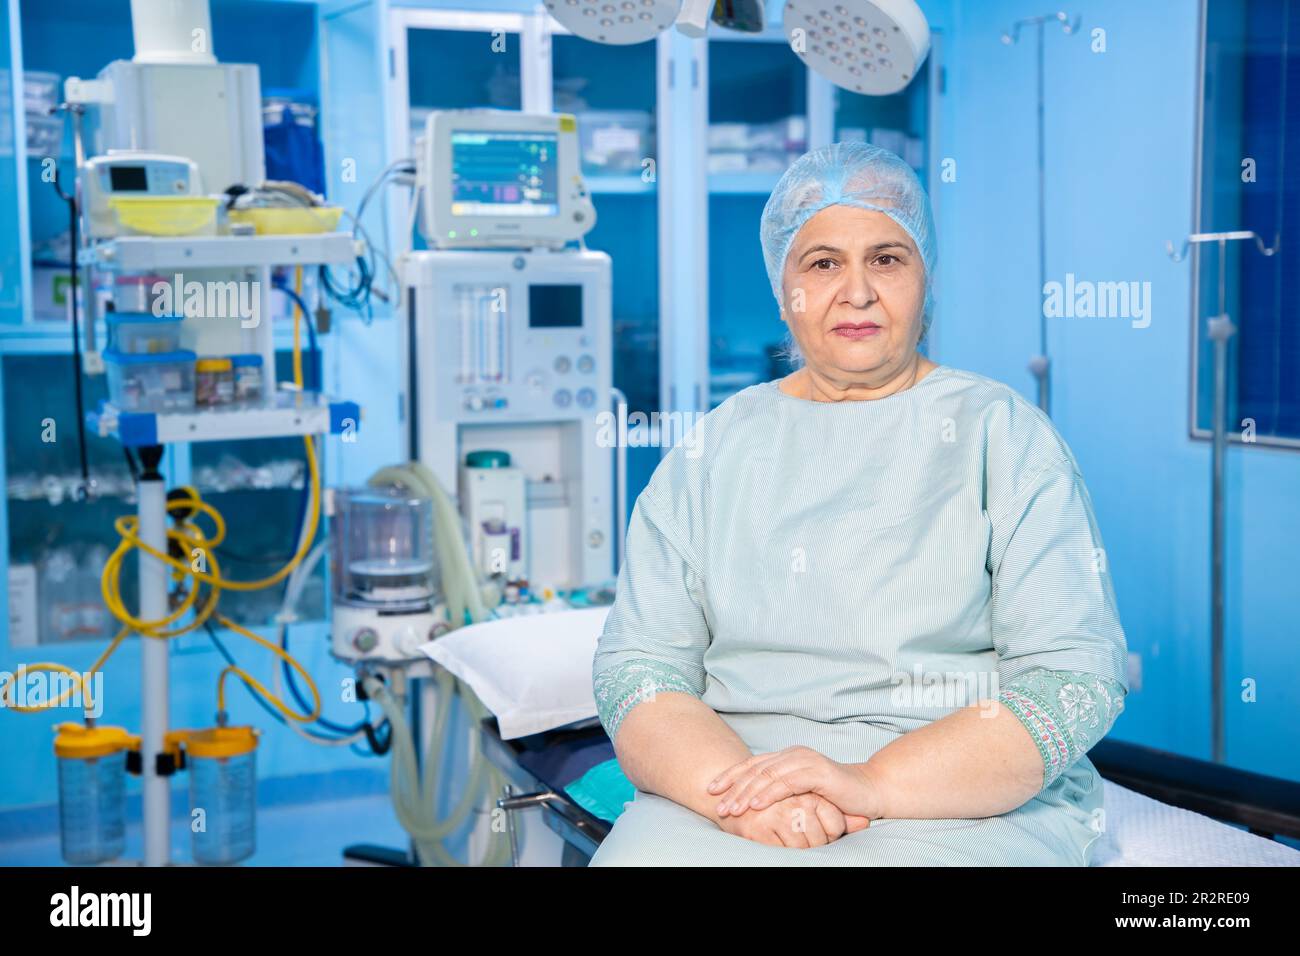 Ritratto di un paziente indiano anziano seduto in teatro operatorio pronto per l'intervento chirurgico in ospedale. Concetto sanitario e medico. Foto Stock